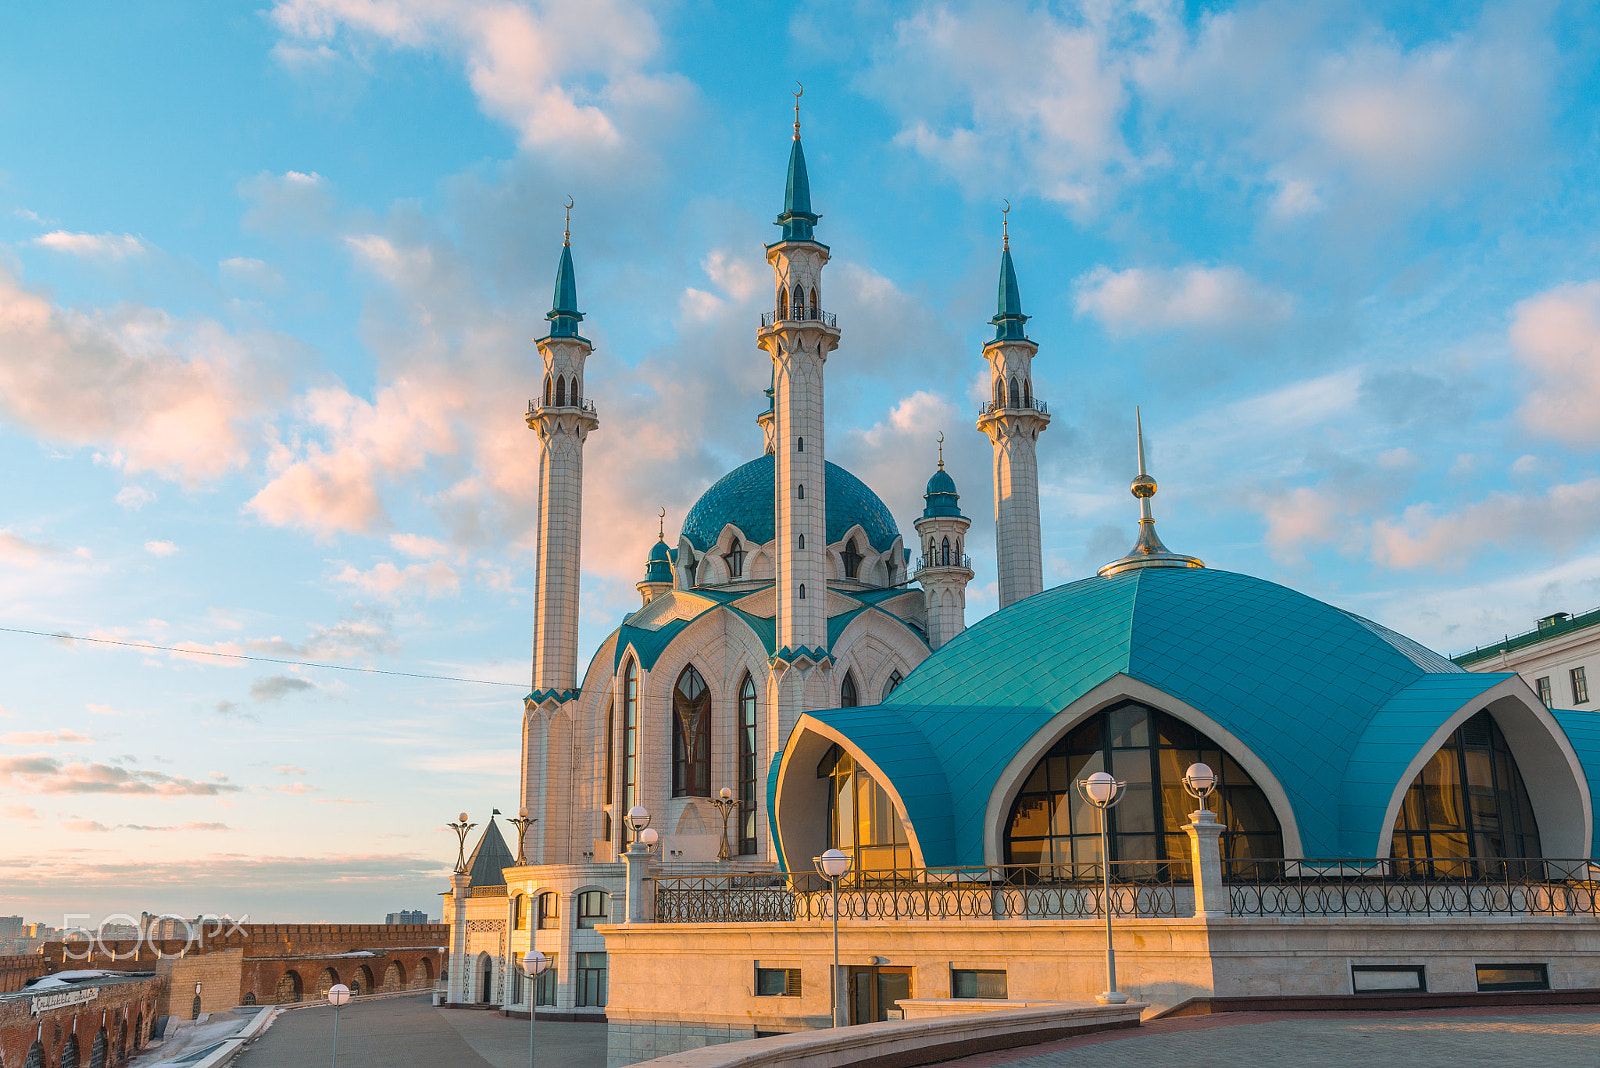 Nikon D600 sample photo. Kul-sharif mosque in kazan kremlin in tatarstan, russia photography